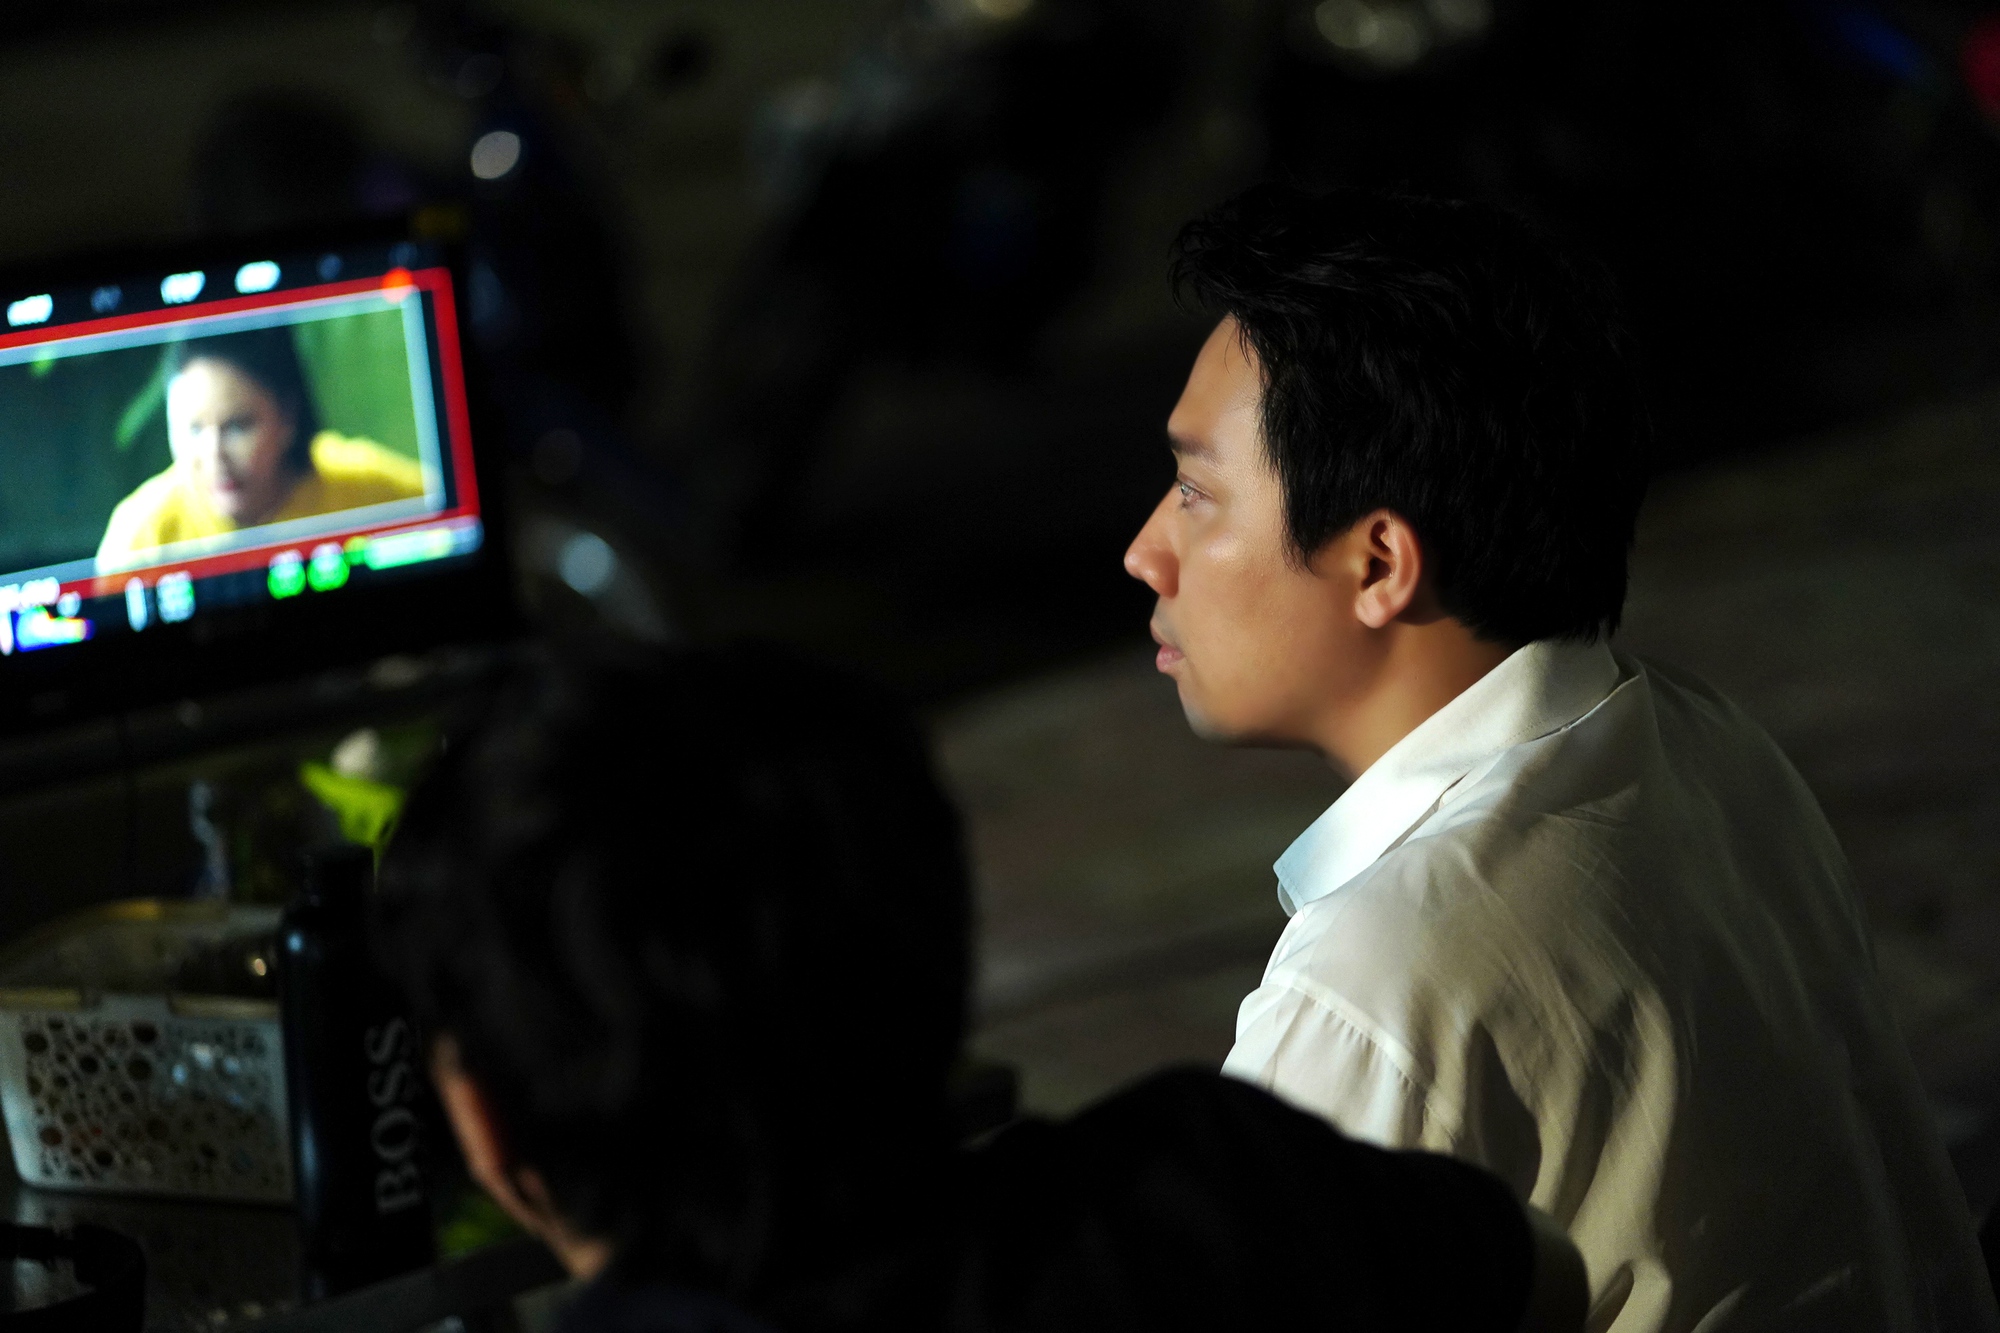 MC, đạo diễn Trấn Thành: “Sau tiếng ồn, sẽ là bi kịch của sự im lặng” - Ảnh 2.